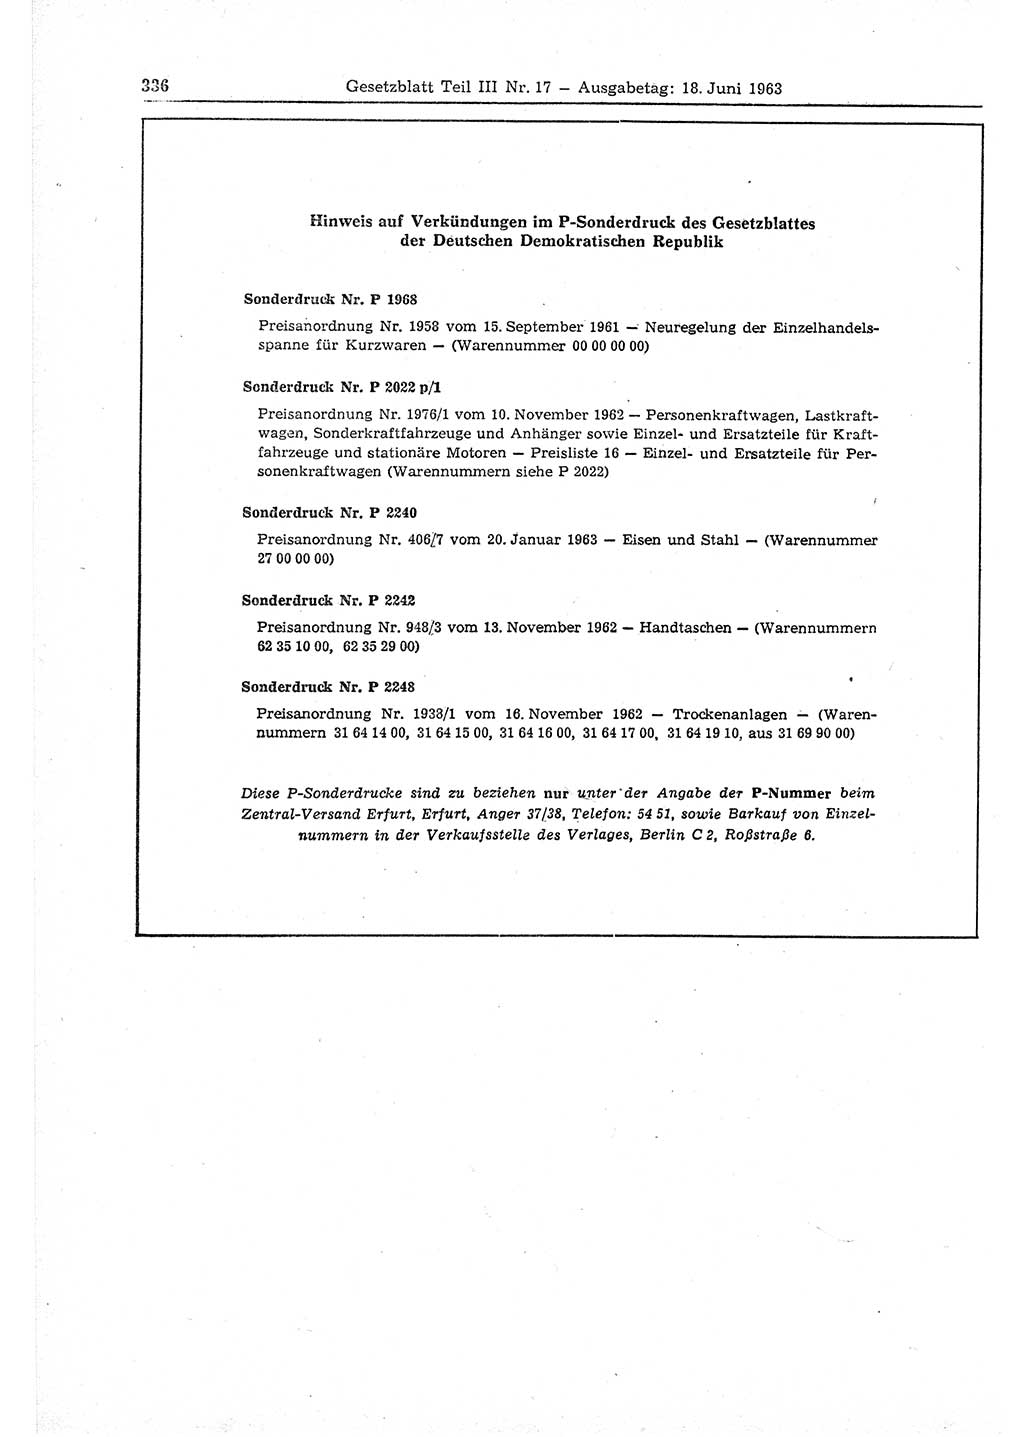 Gesetzblatt (GBl.) der Deutschen Demokratischen Republik (DDR) Teil ⅠⅠⅠ 1963, Seite 336 (GBl. DDR ⅠⅠⅠ 1963, S. 336)